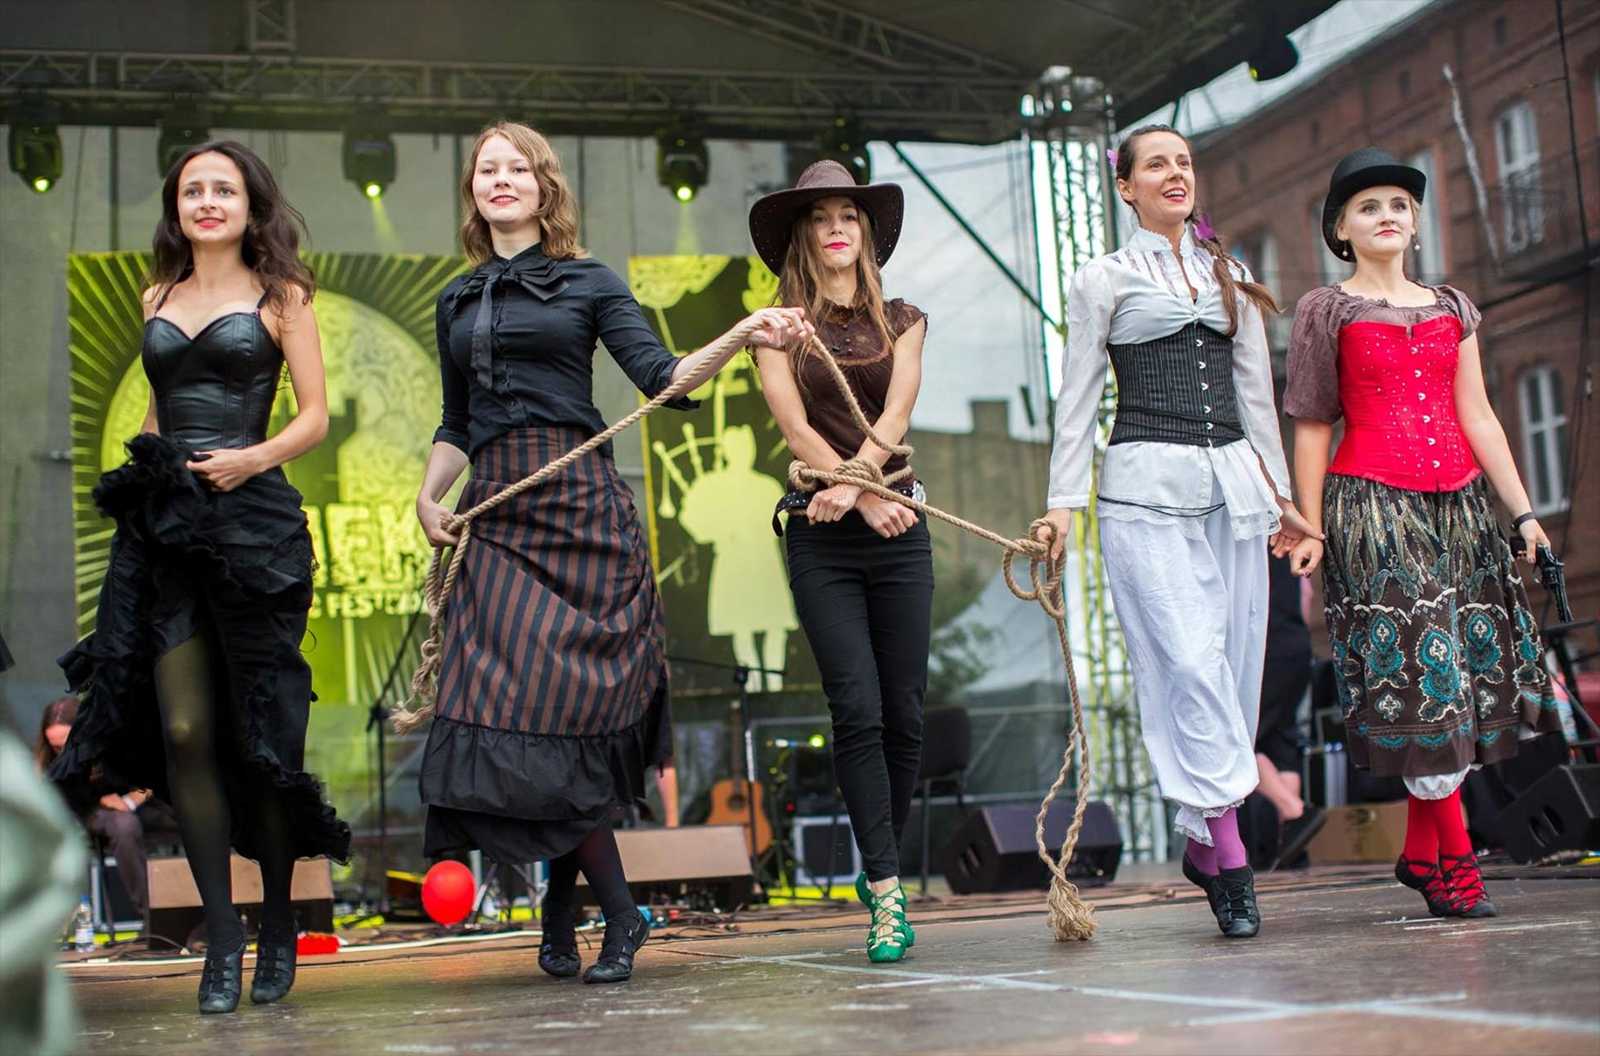 Celtic Music Festival in Będzin